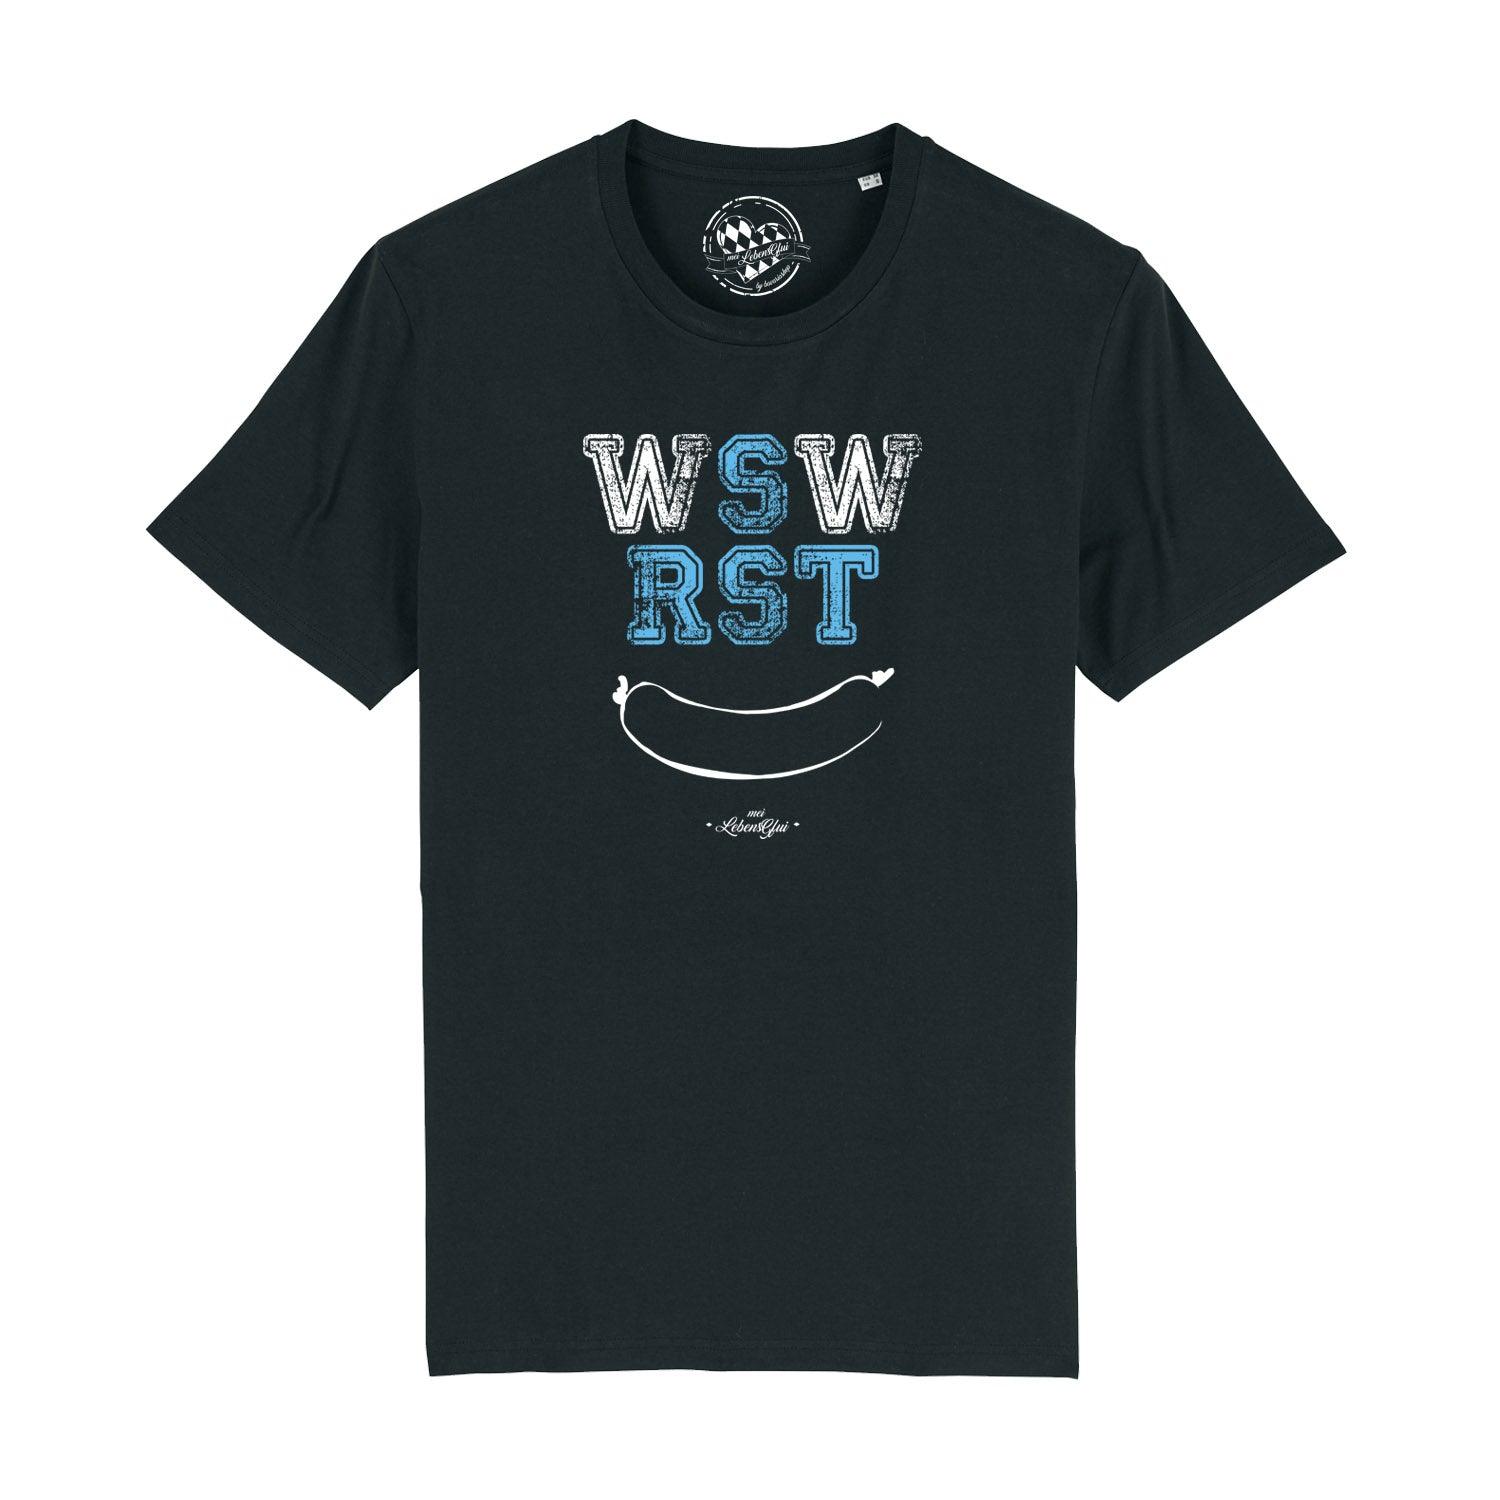 Herren T-Shirt "WSWRST" - bavariashop - mei LebensGfui